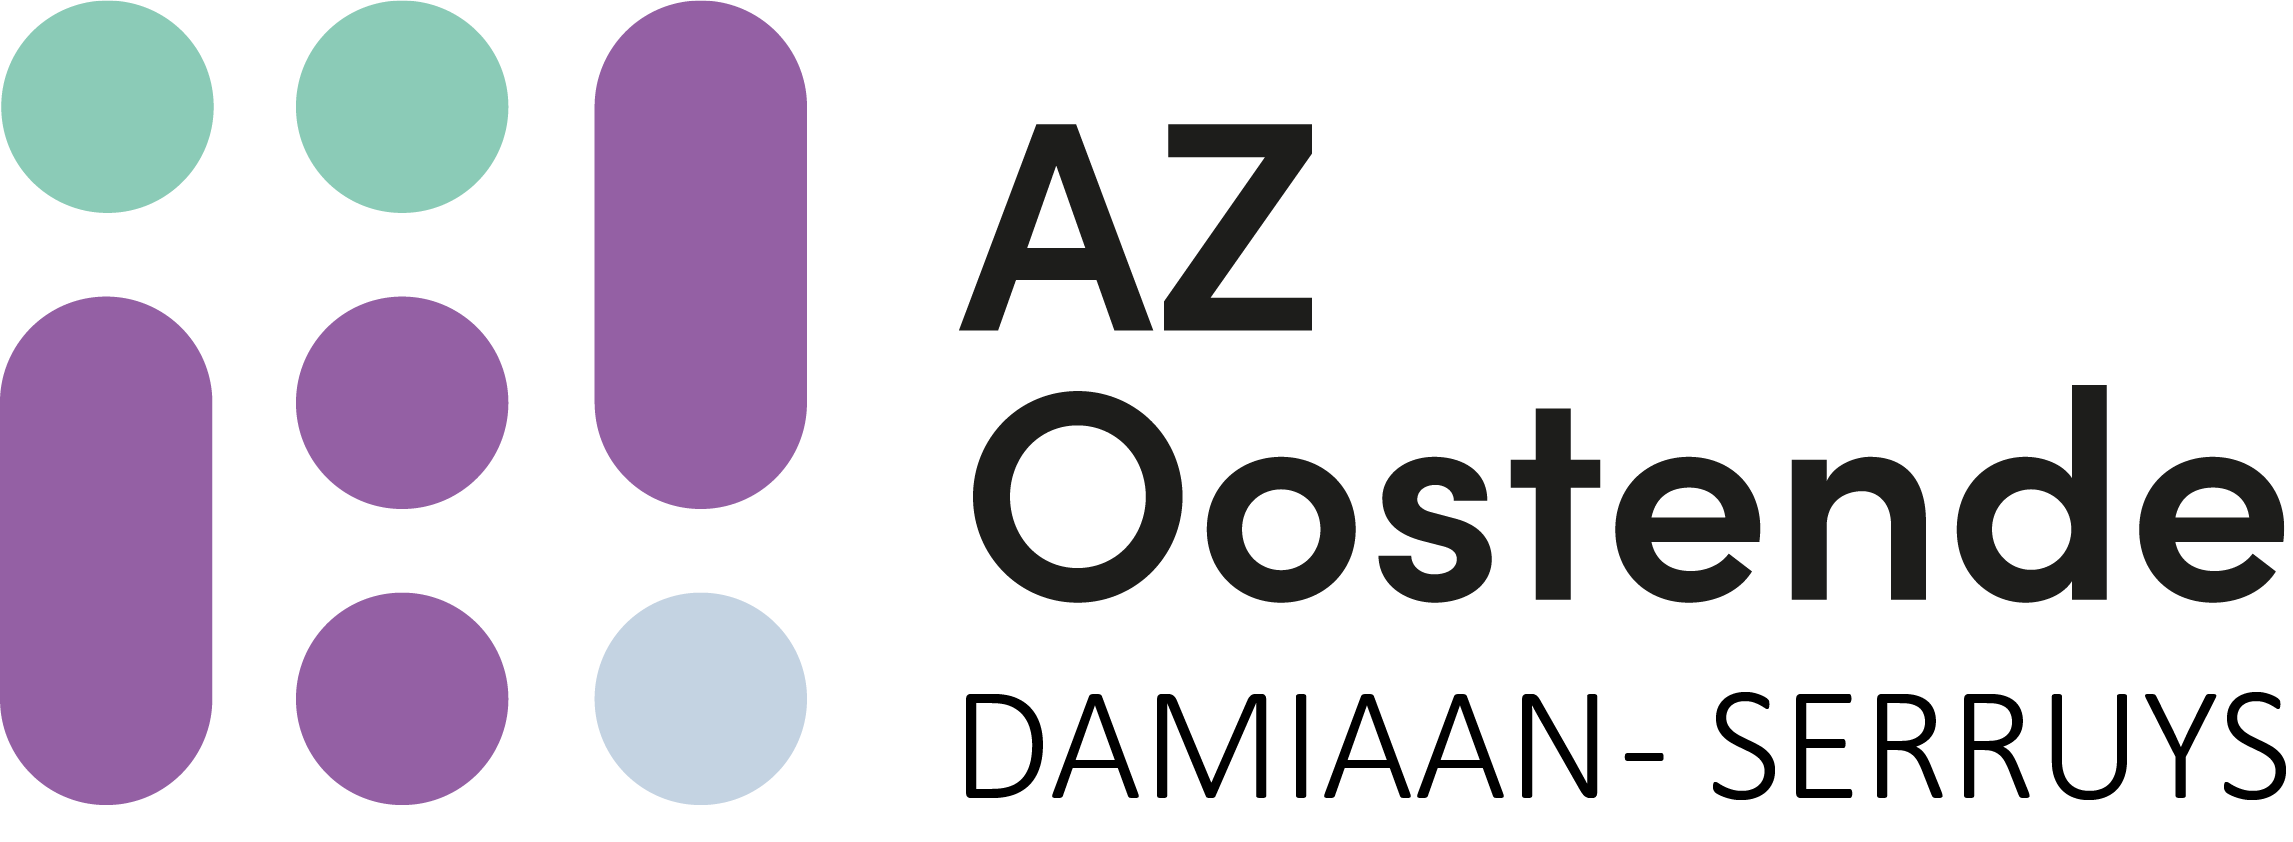 AZ Oostende verbetert efficiëntie medisch materiaal dankzij locatiegebaseerde asset tracking van PHI DATA en Blyott